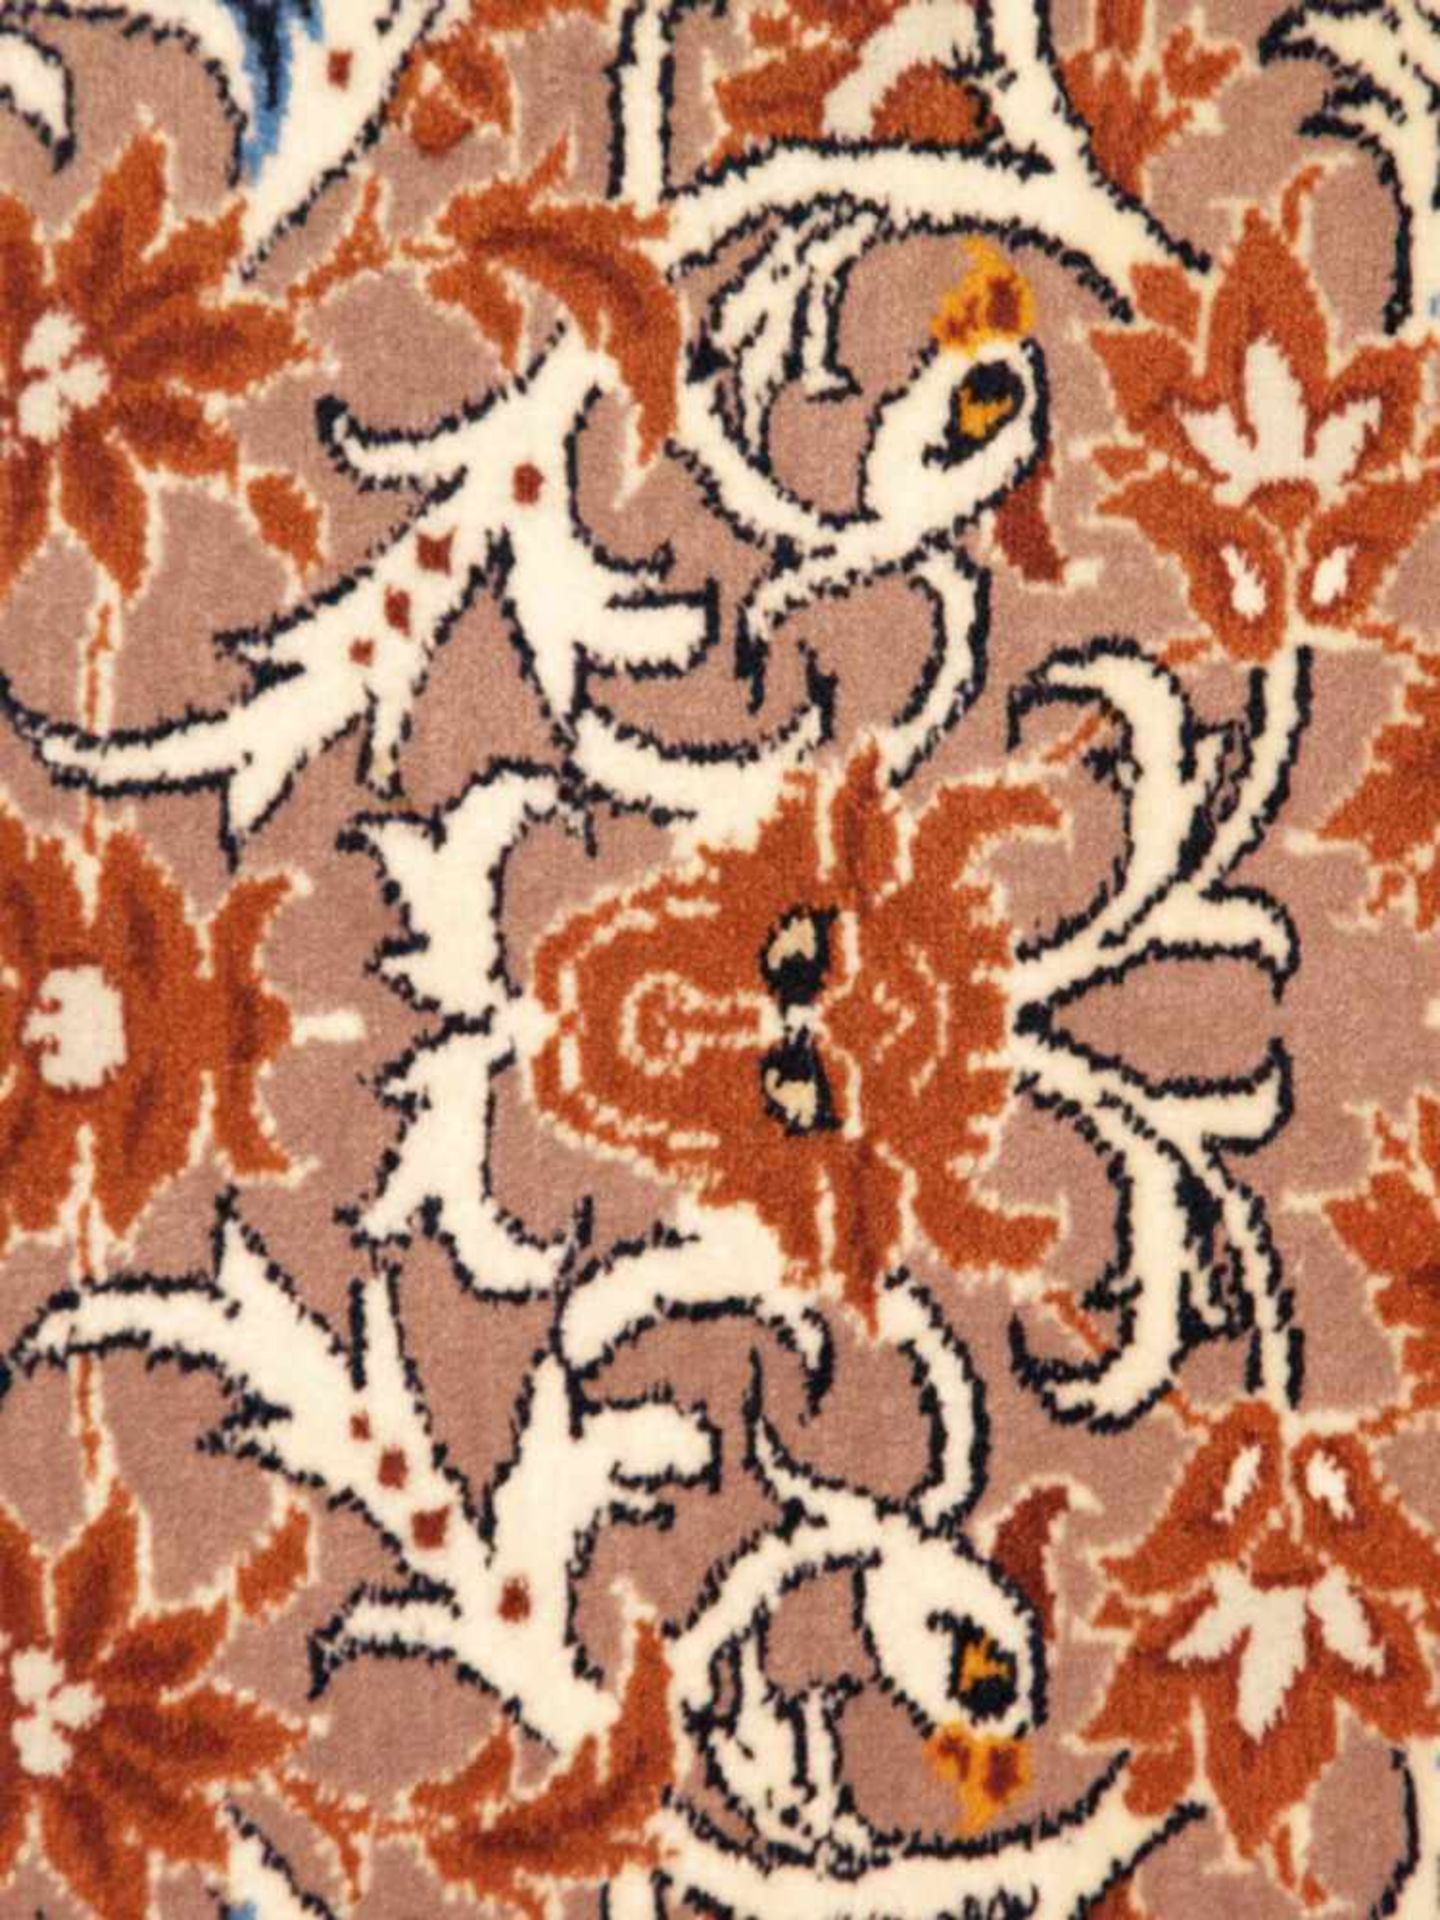 Orientteppich - Wolle und Seide, blaugrundig, zentrale florale Kartusche, gerahmt von Vögeln, - Bild 8 aus 11